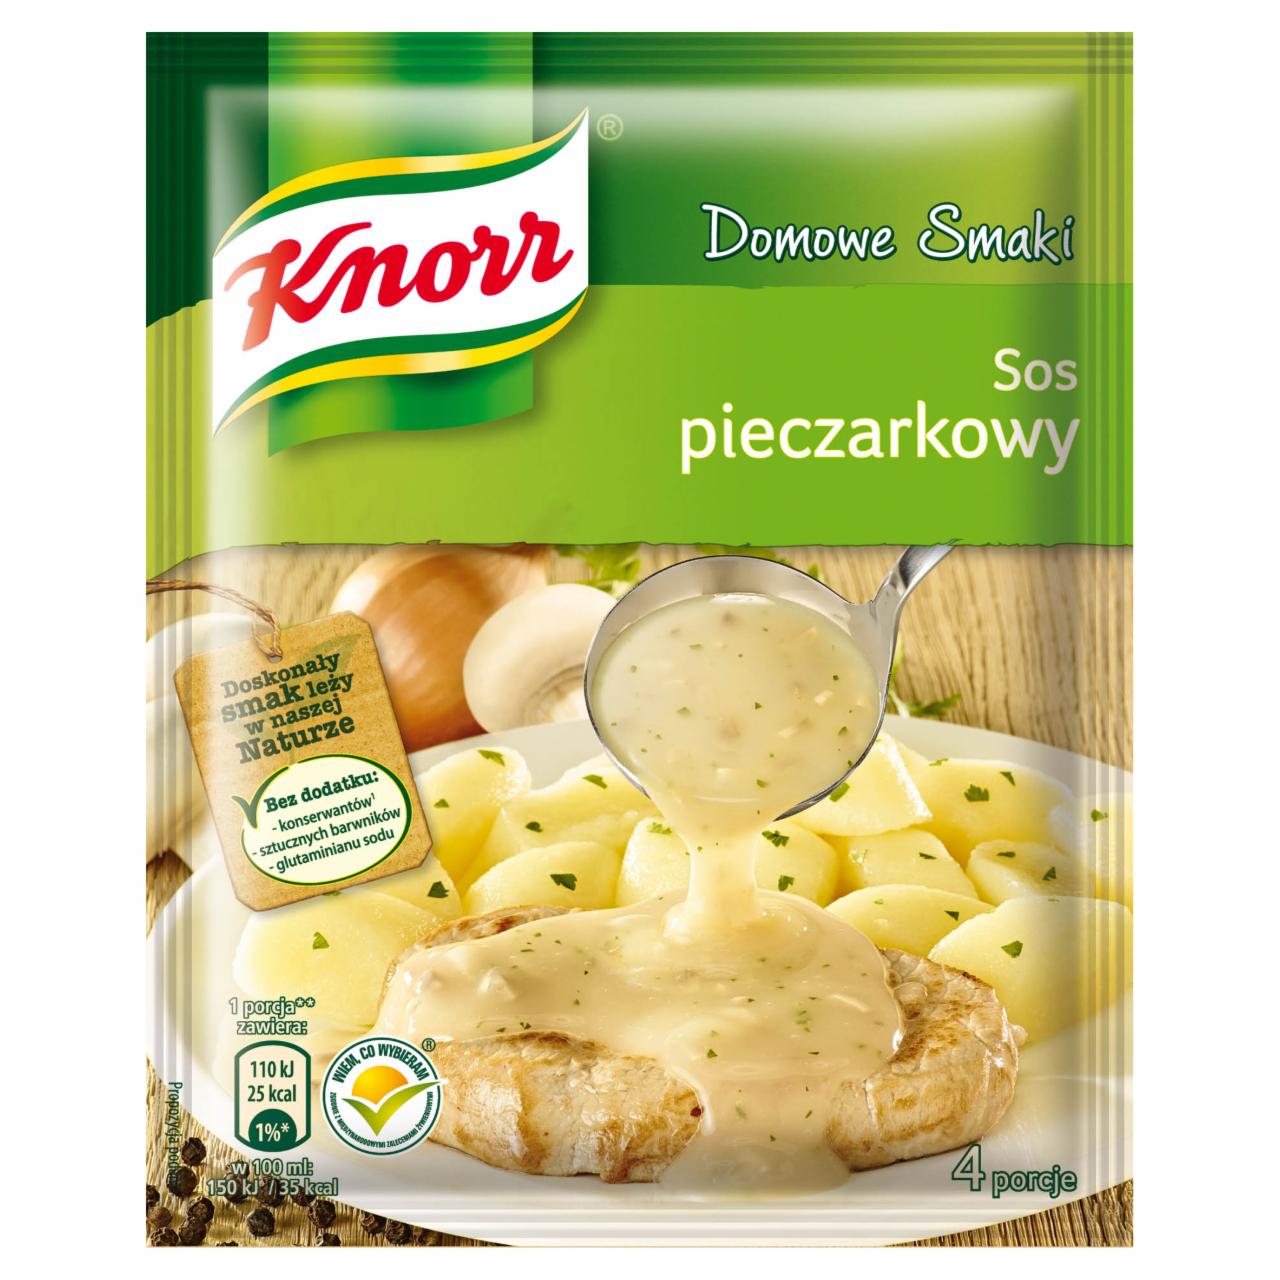 Zdjęcia - Knorr Domowe Smaki Sos pieczarkowy 27 g